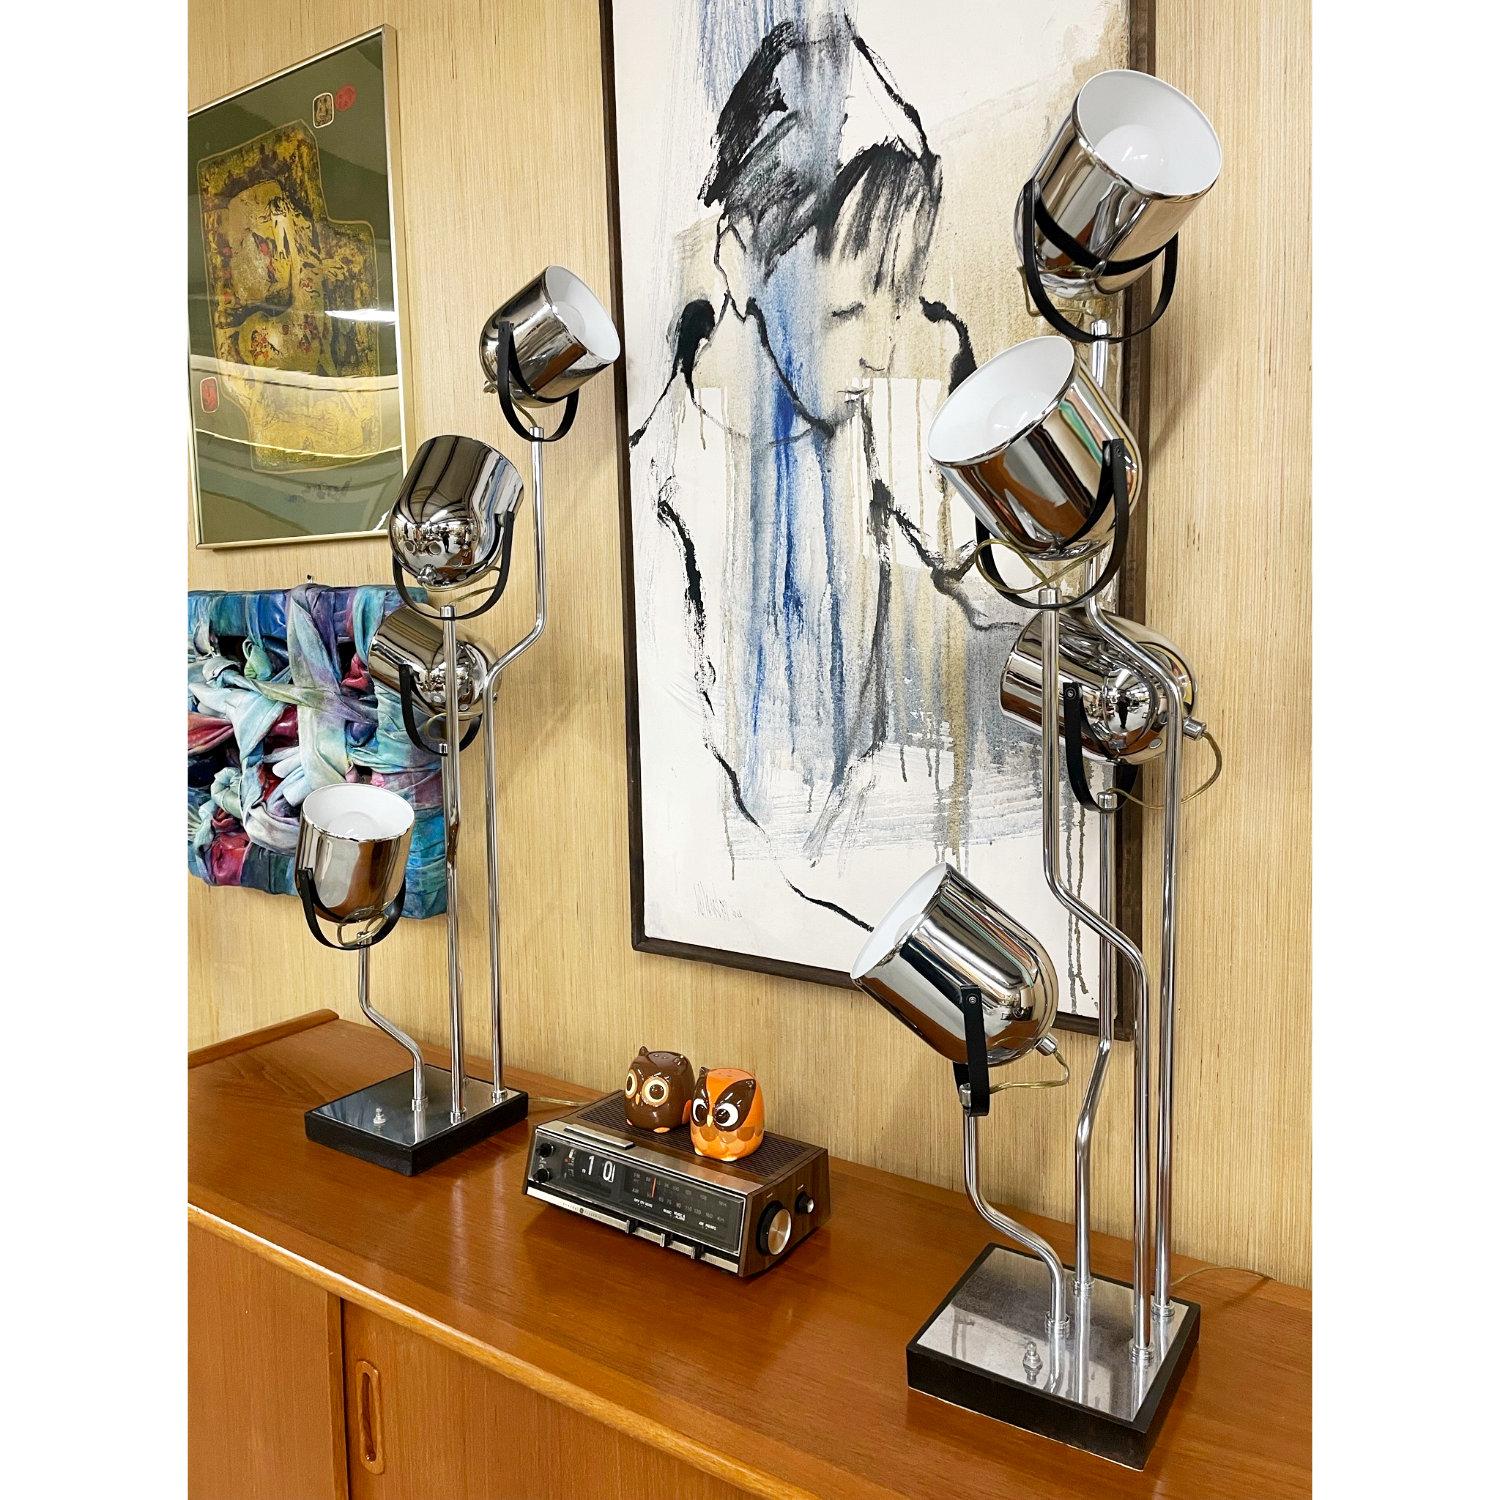 Paire de lampes d'appoint post-moderne en chrome de Goffredo Reggiani. Ces lampes de fabrication italienne comportent chacune quatre têtes de projecteurs. Les têtes sont articulées, réglez l'inclinaison et faites pivoter les têtes dans la position